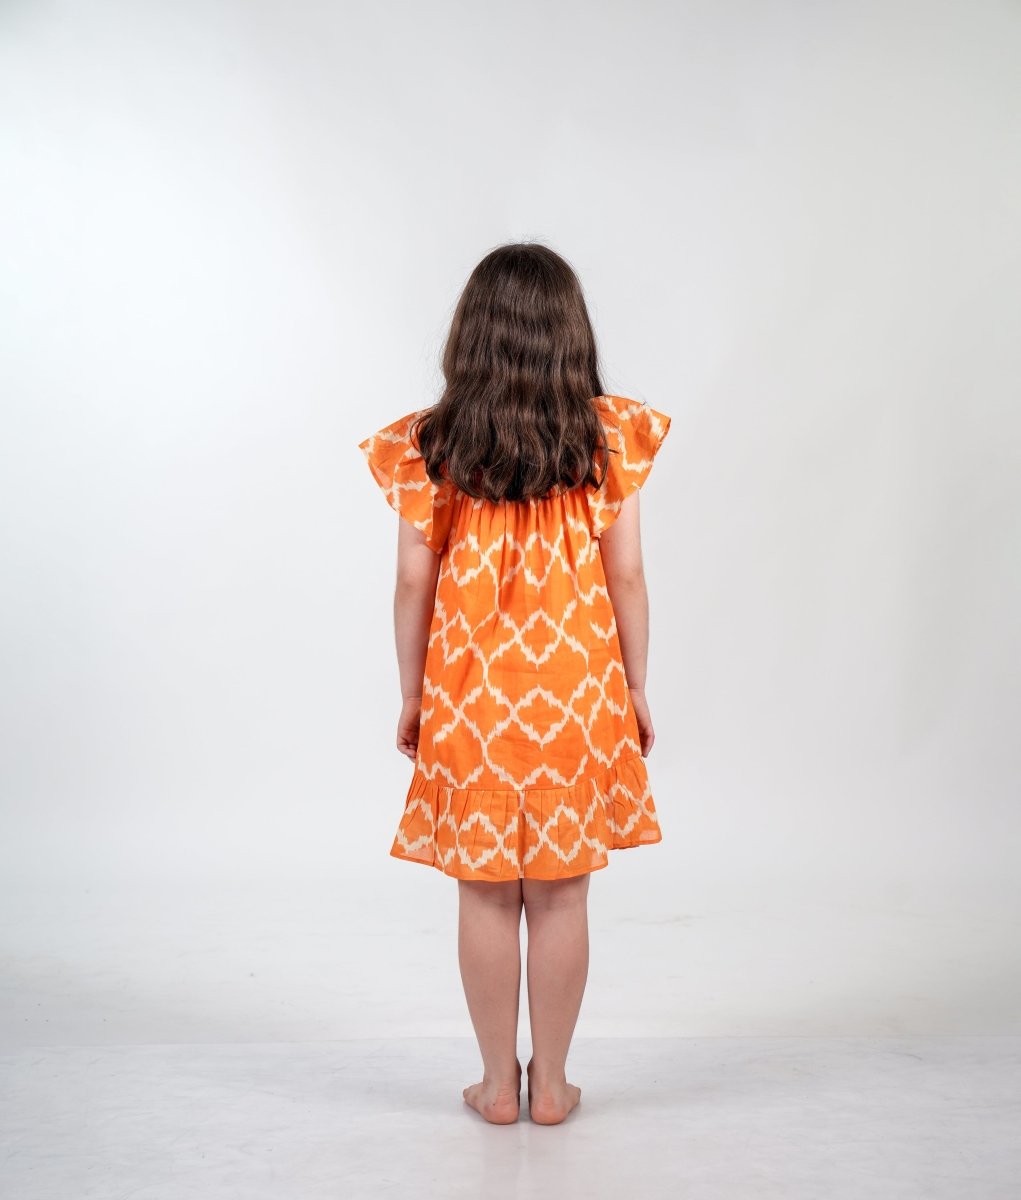 Adria orange dress - TANAVANA INC